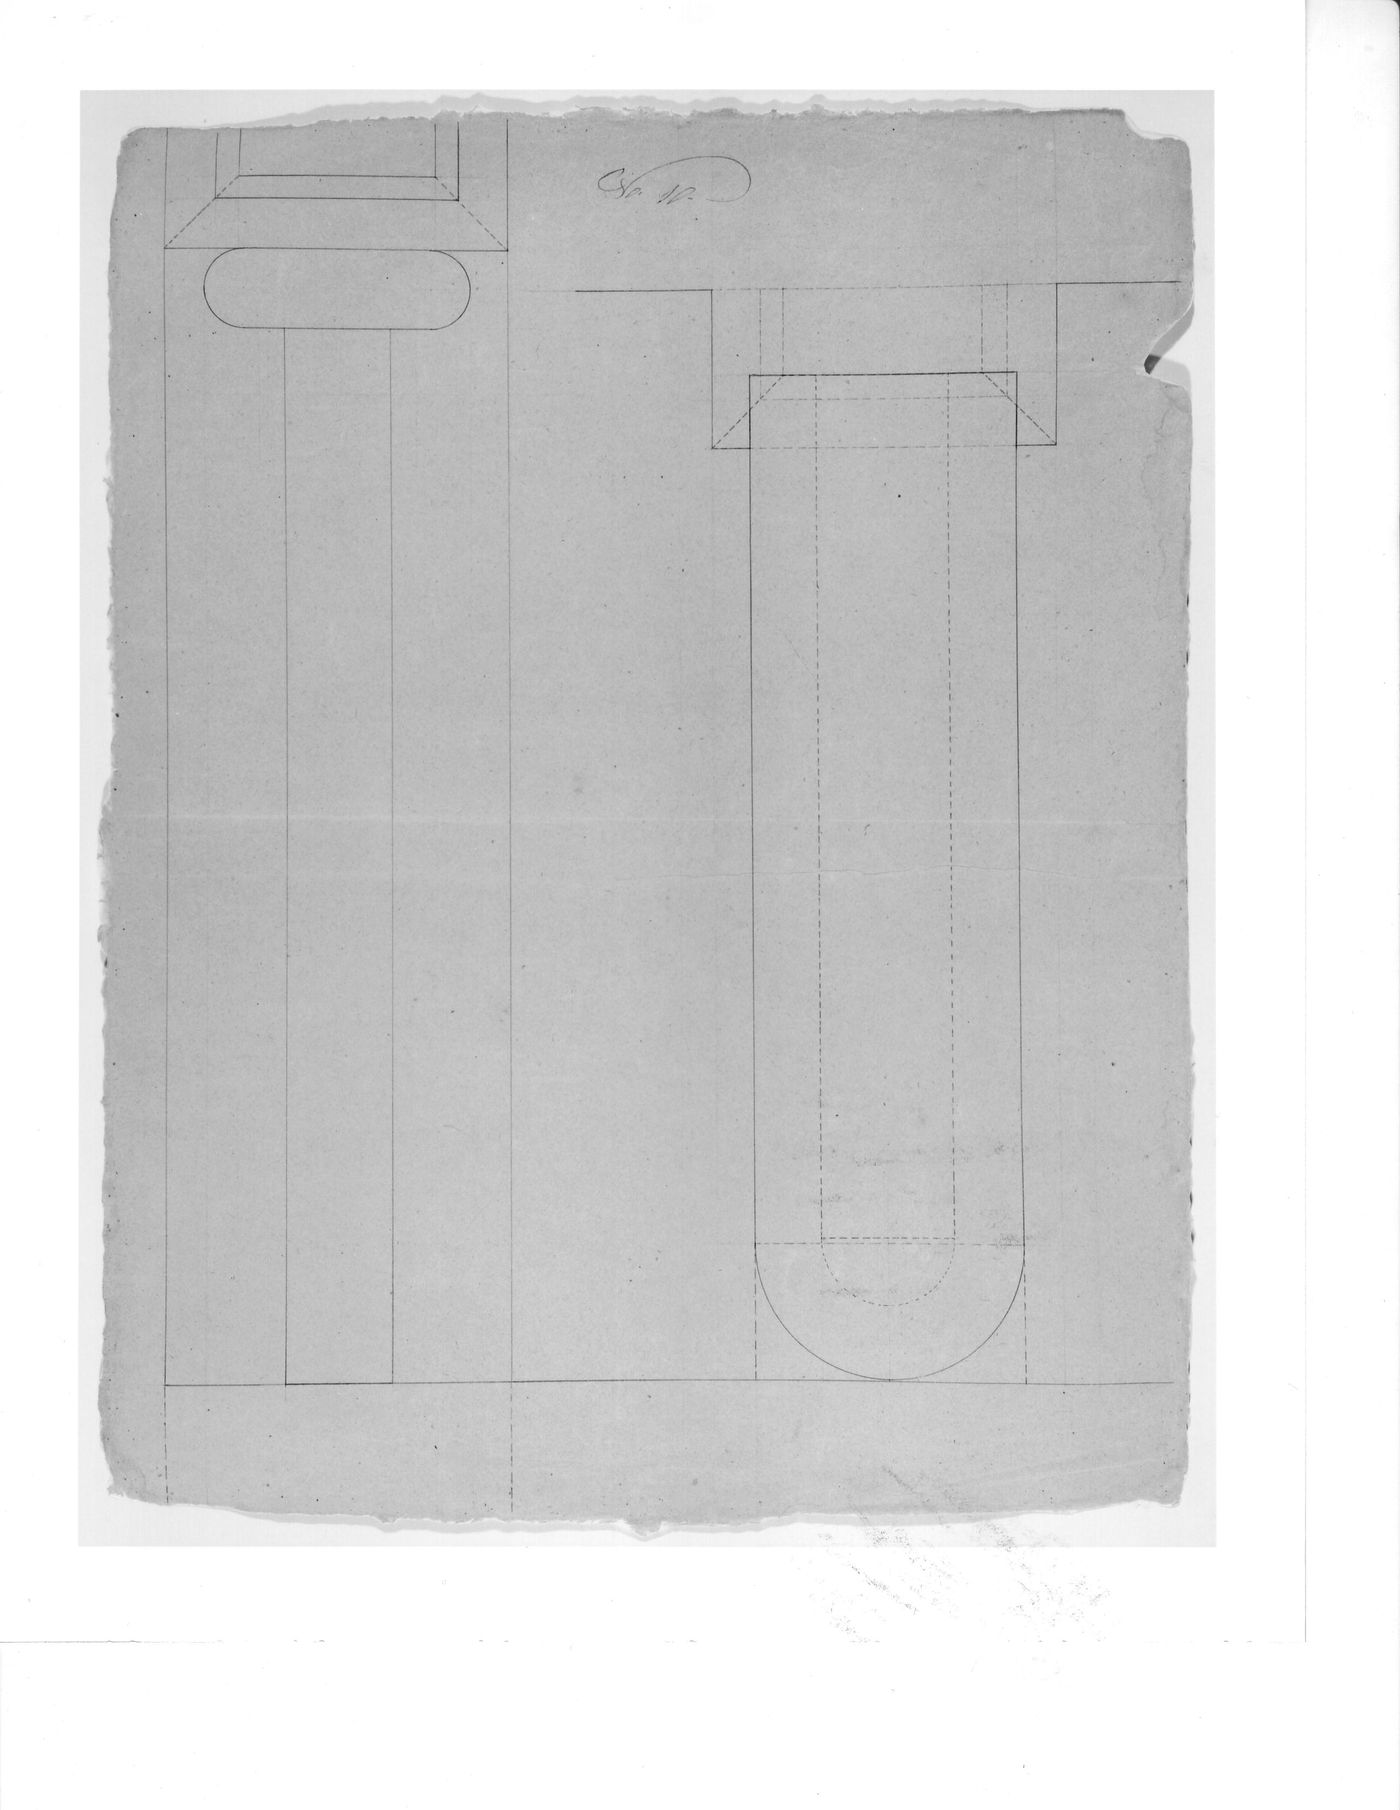 Plans [?] for paneling and/or decorative details for Notre-Dame de Montréal